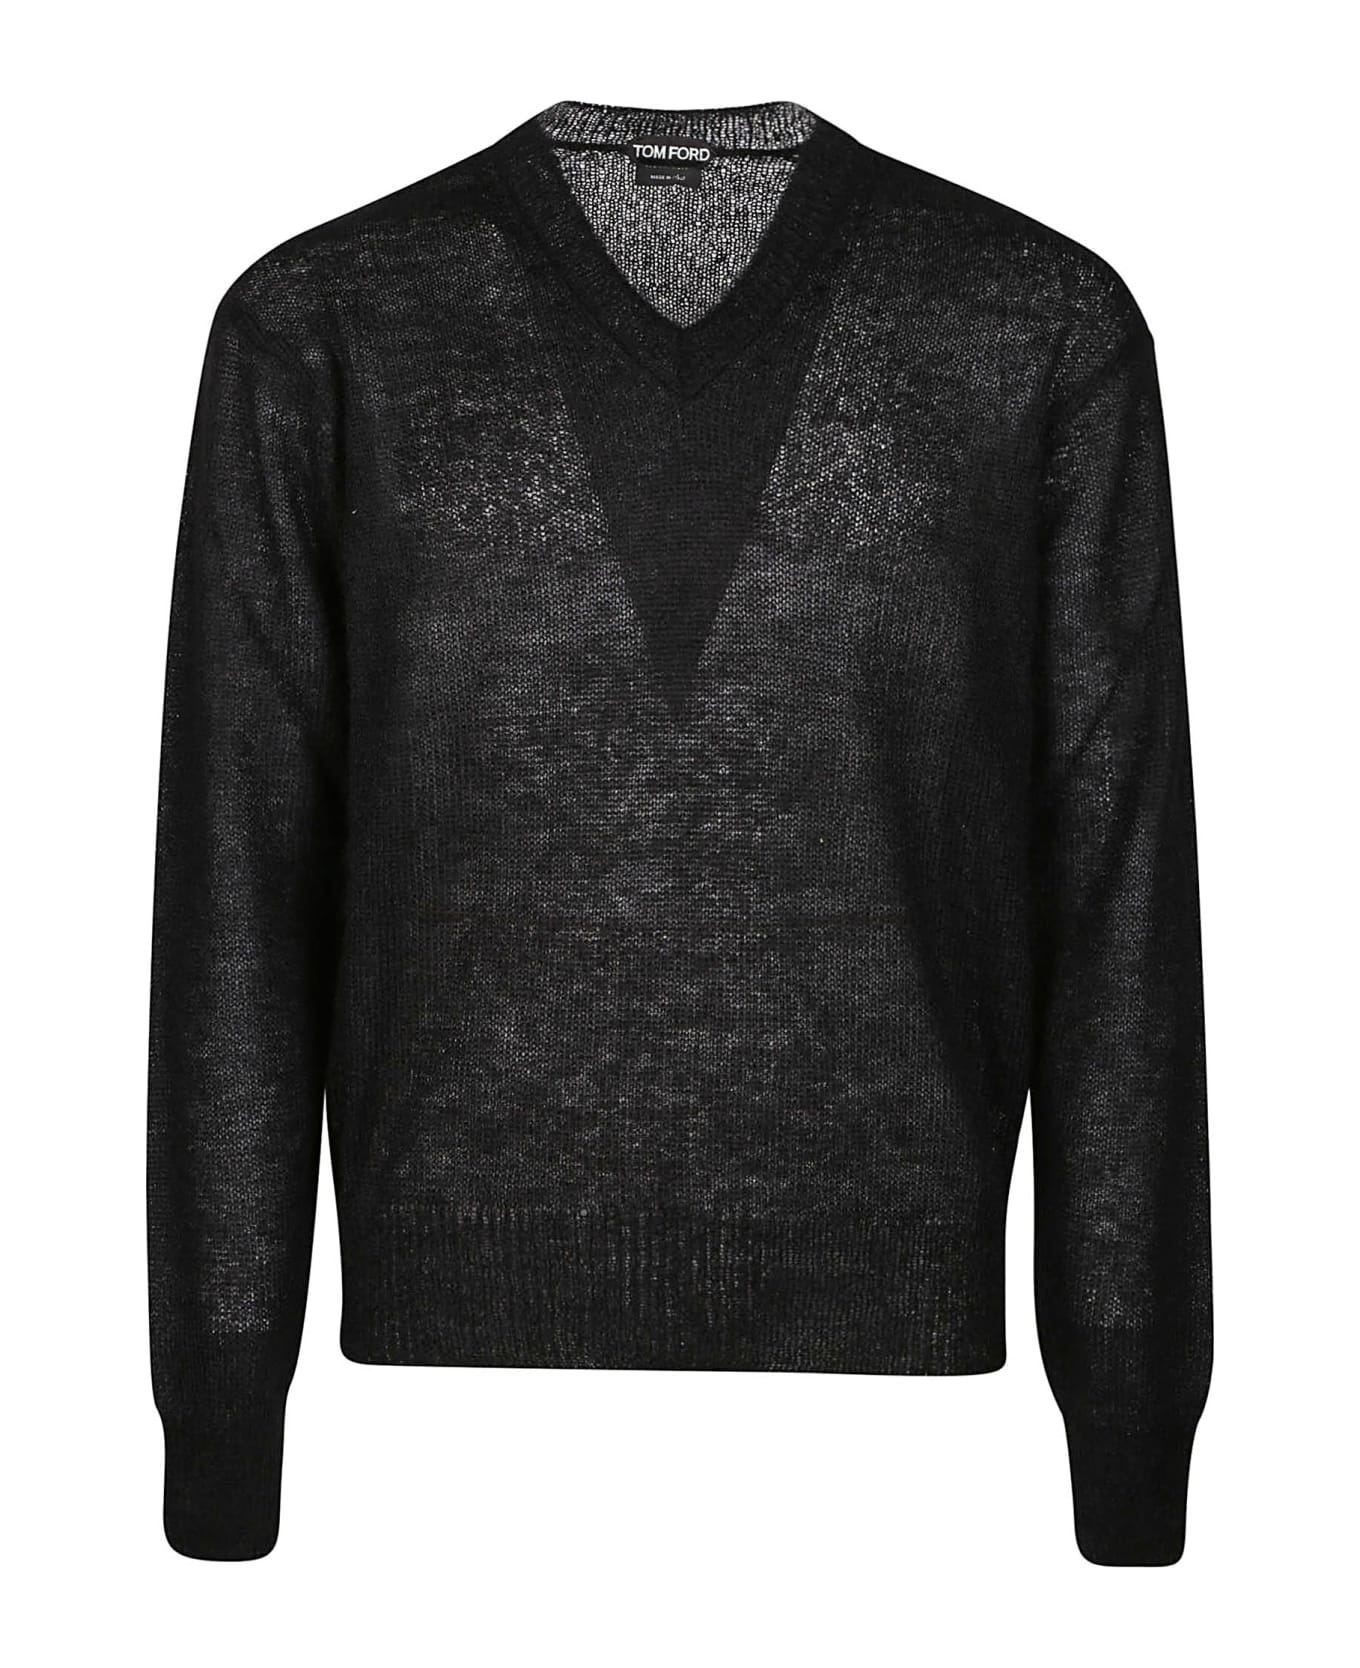 Tom Ford V-neck Sweater - Black ニットウェア